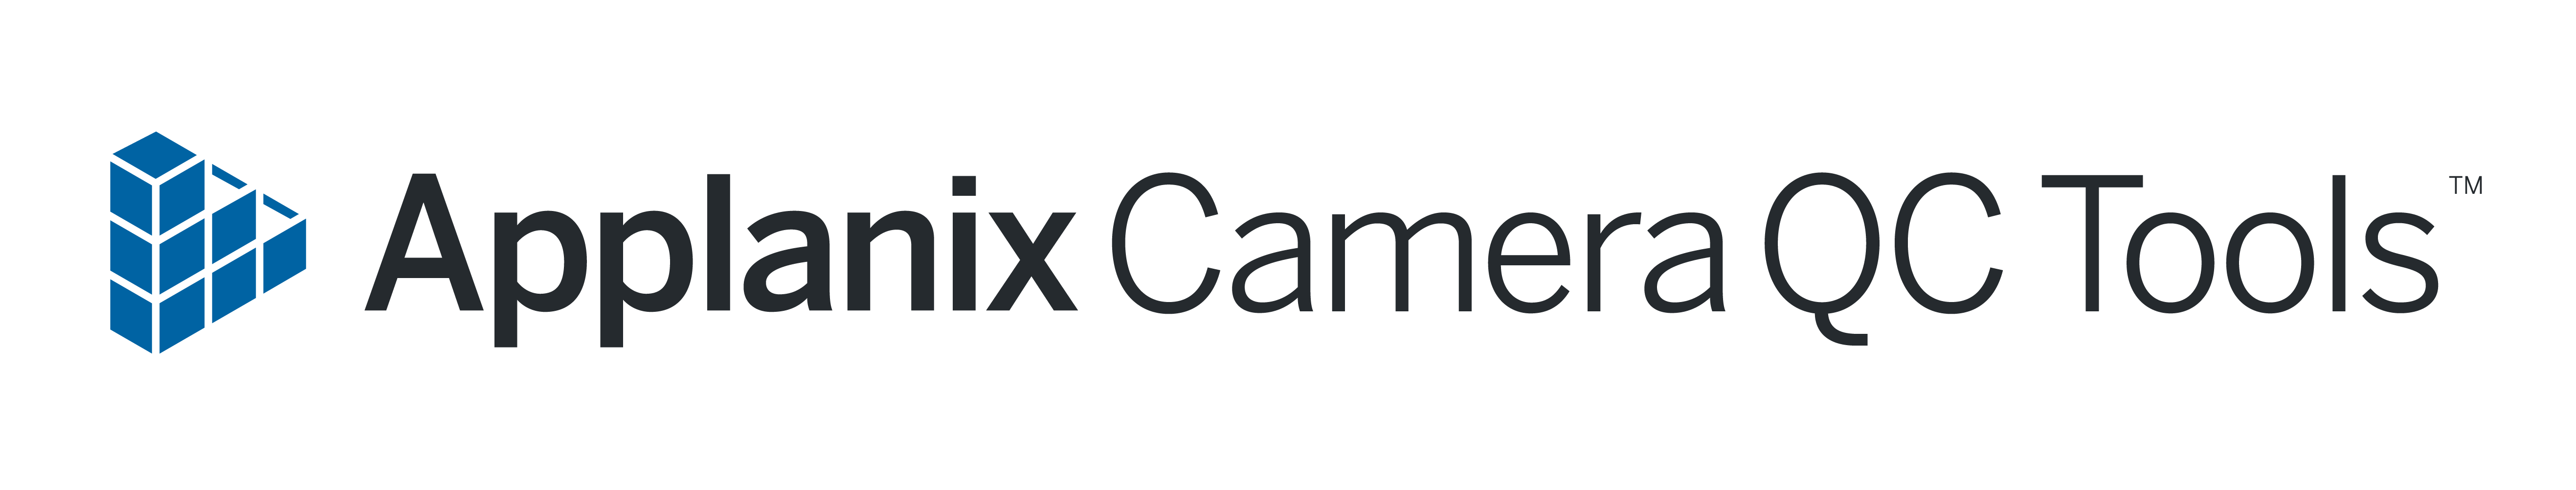 Applanix Camera QC Tools